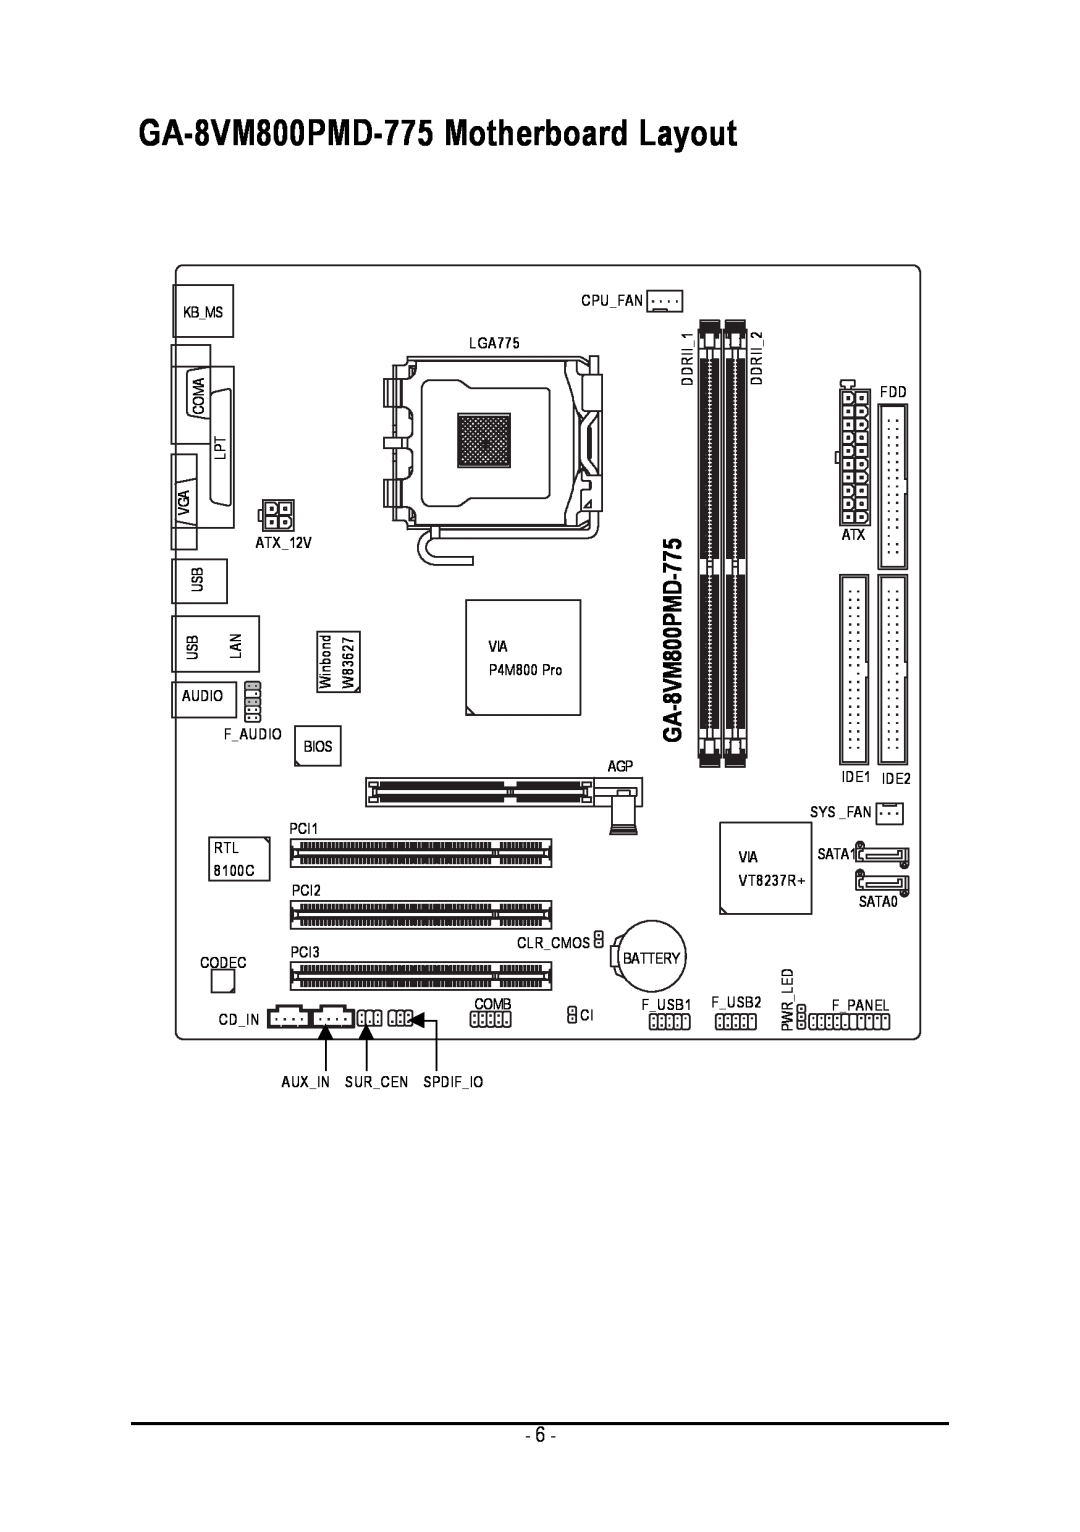 Intel user manual GA-8VM800PMD-775 Motherboard Layout, VIA775-8VM800PMD 